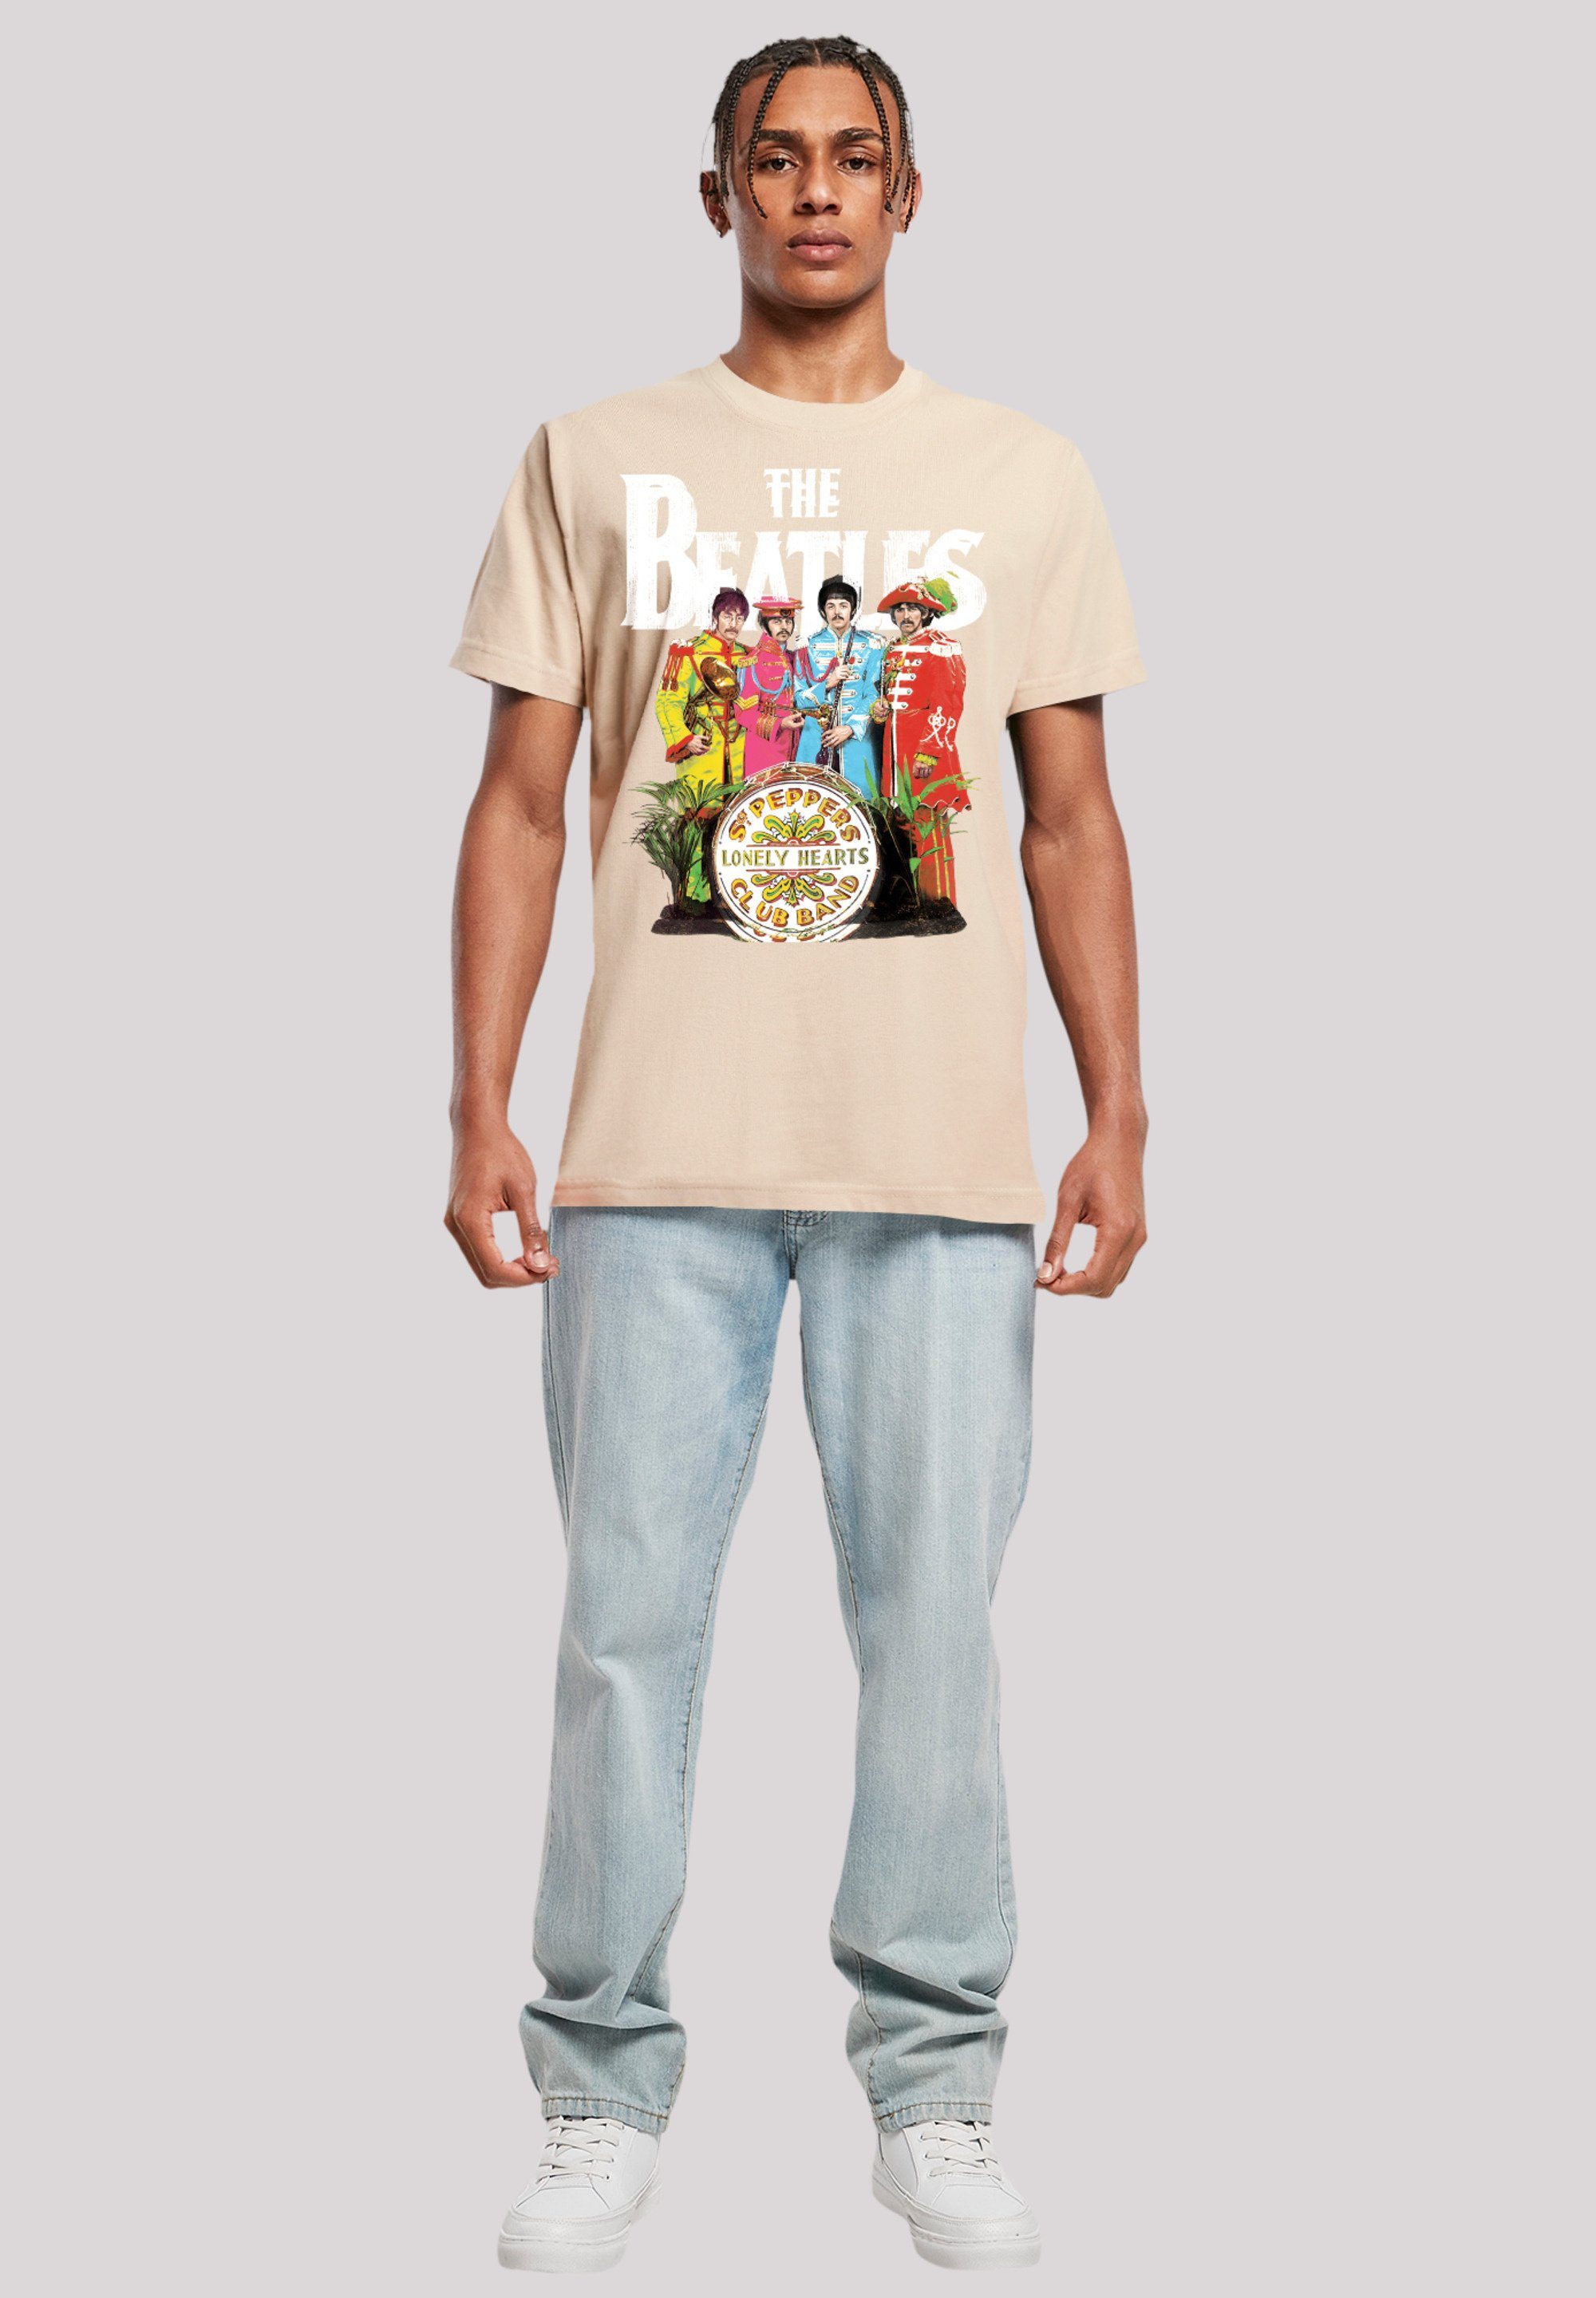 The Beatles sand T-Shirt Pepper Print F4NT4STIC Sgt